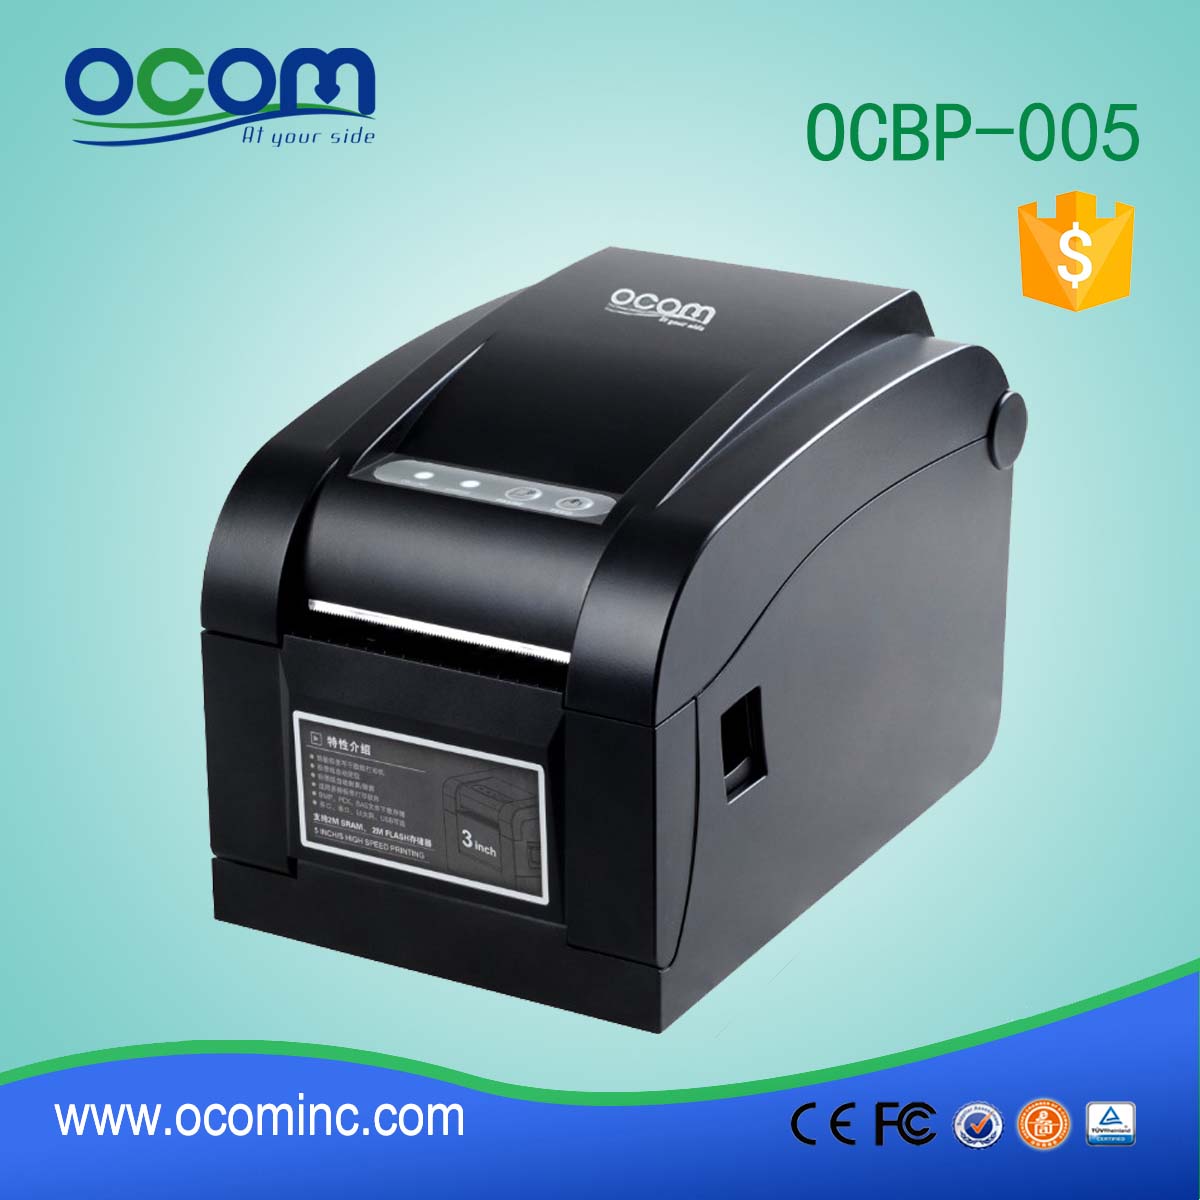 OCBP-005-U Impressora de etiquetas de código de barras térmicas de 3 "USB Interface USB